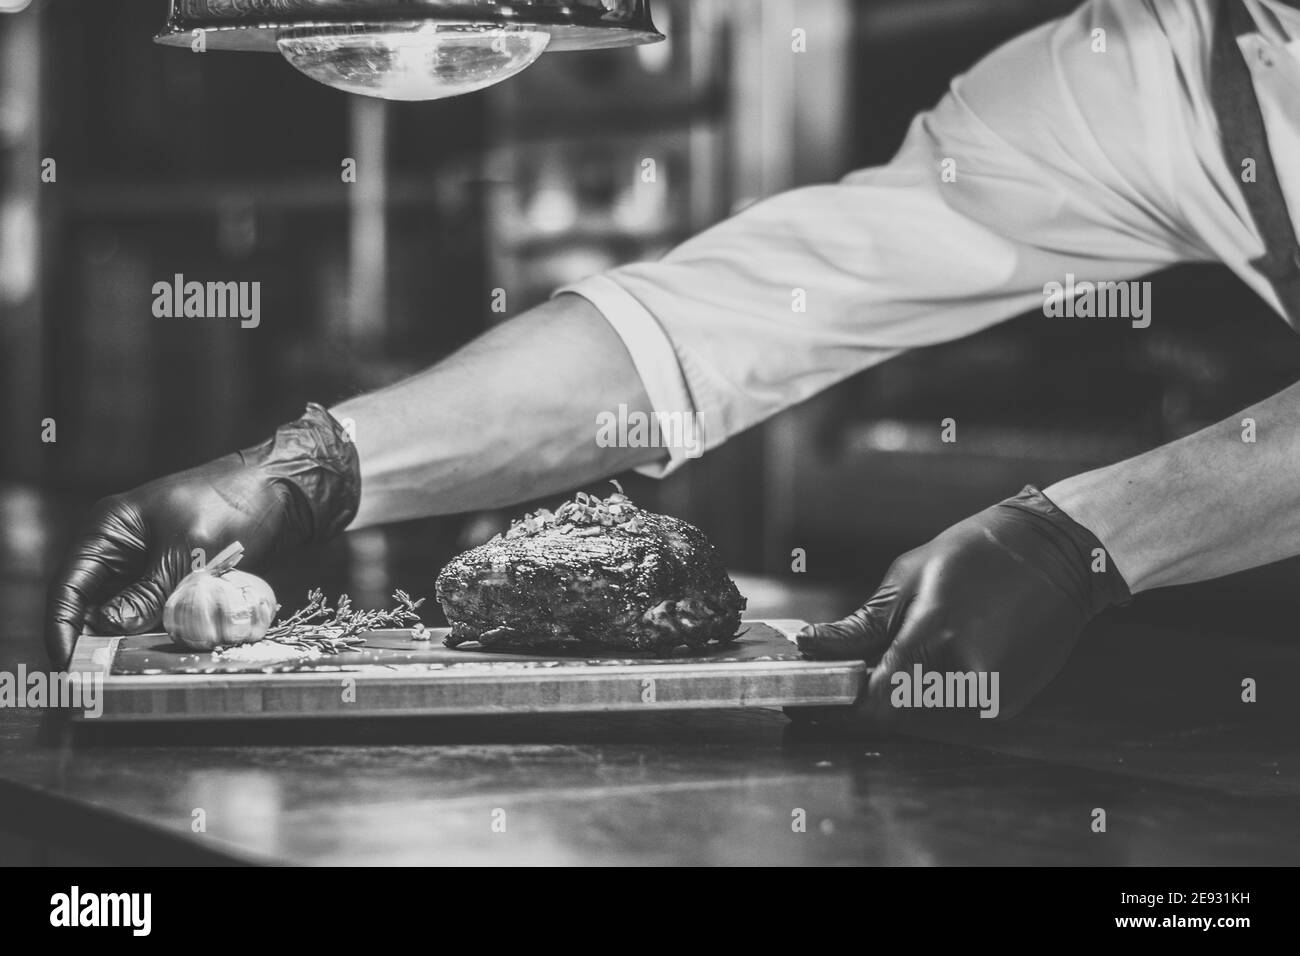 Chef cuisinant des côtes grillées sur un comptoir dans un restaurant Banque D'Images